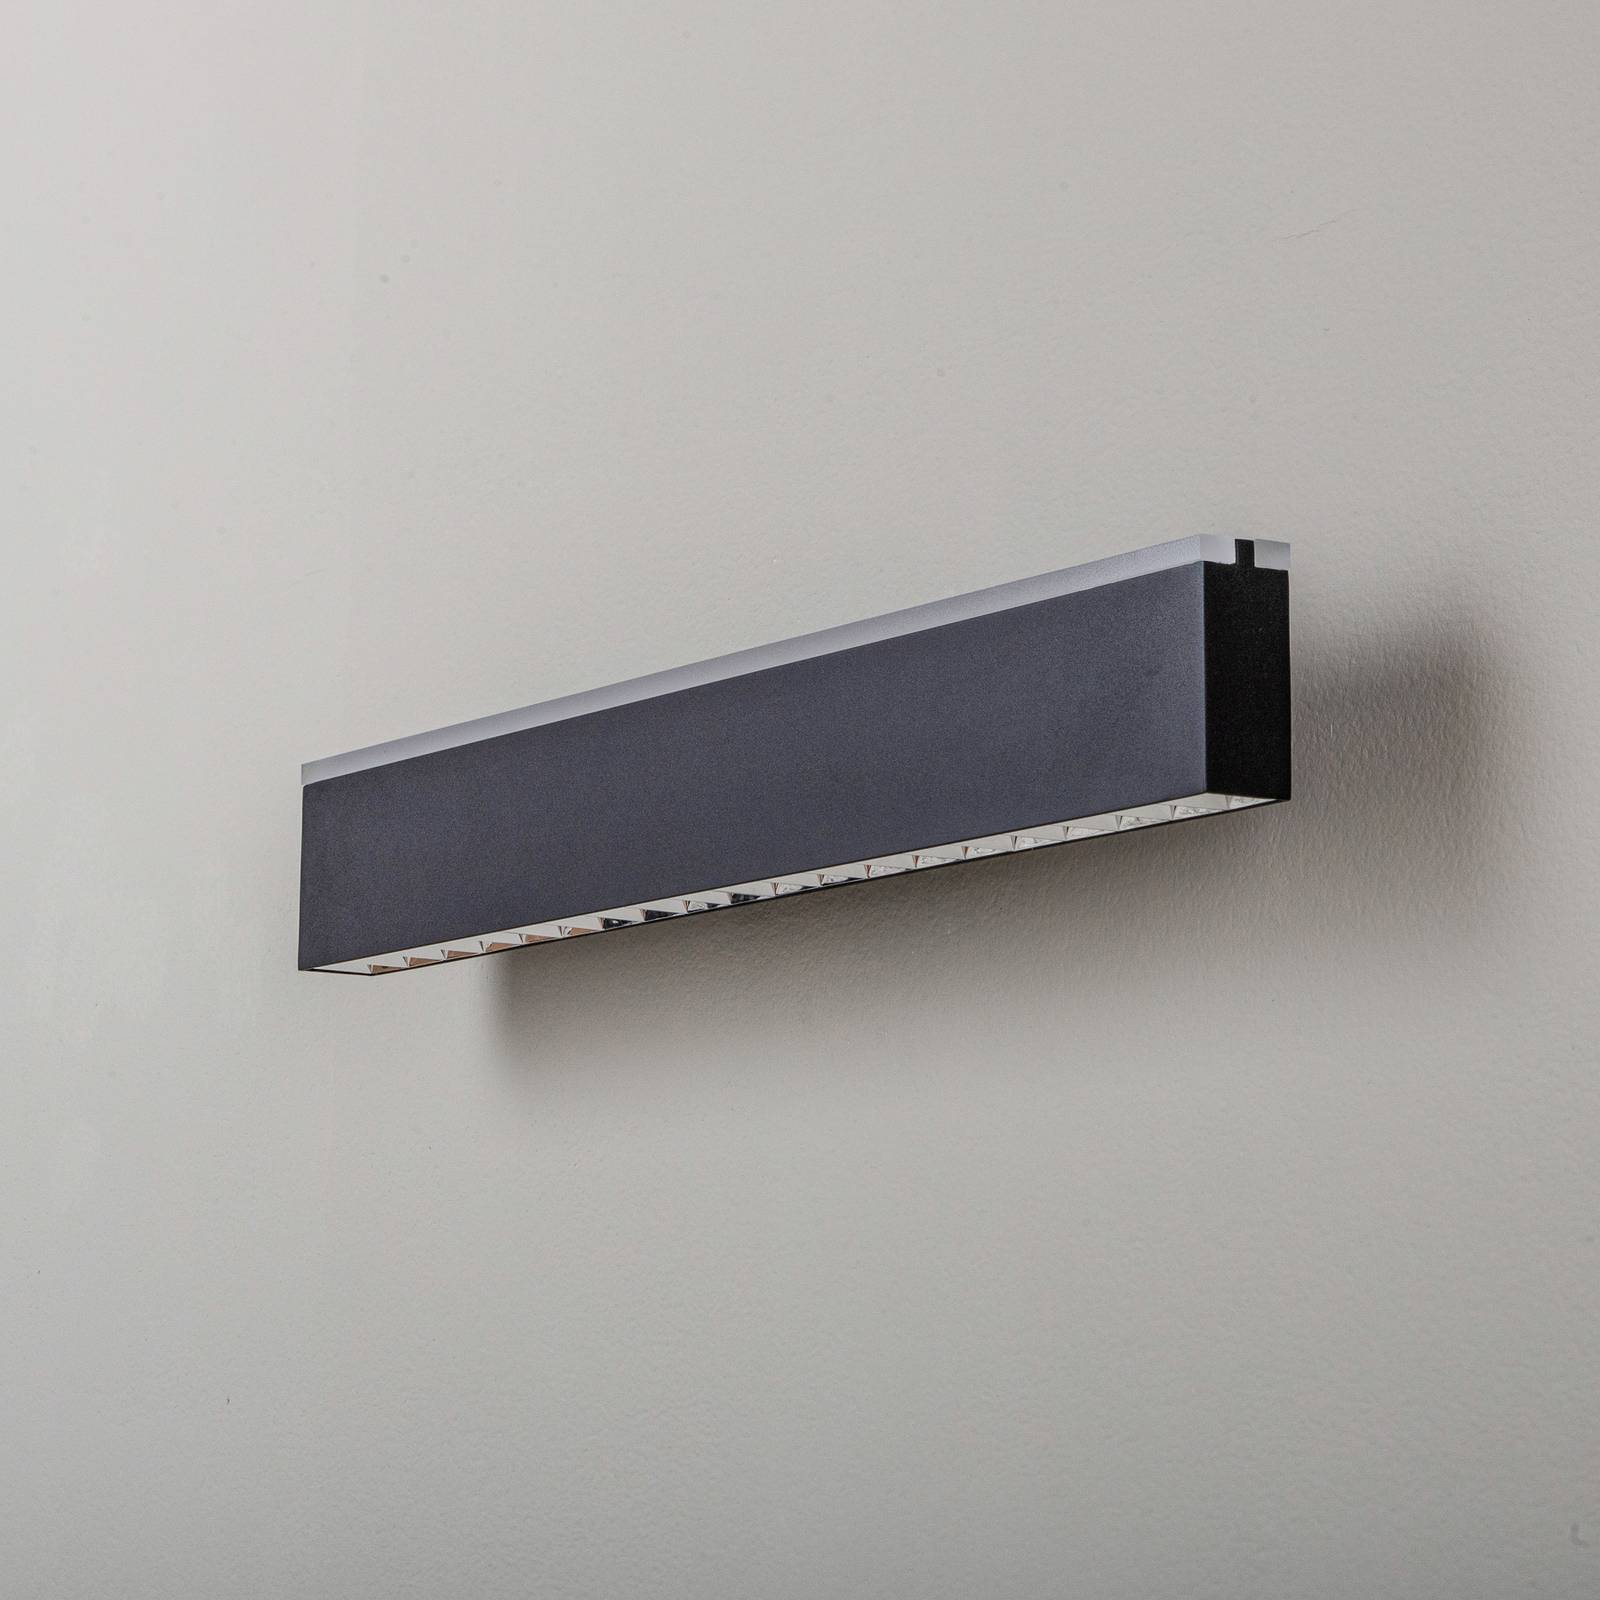 Lucande Henner LED wall light, black, 60 cm